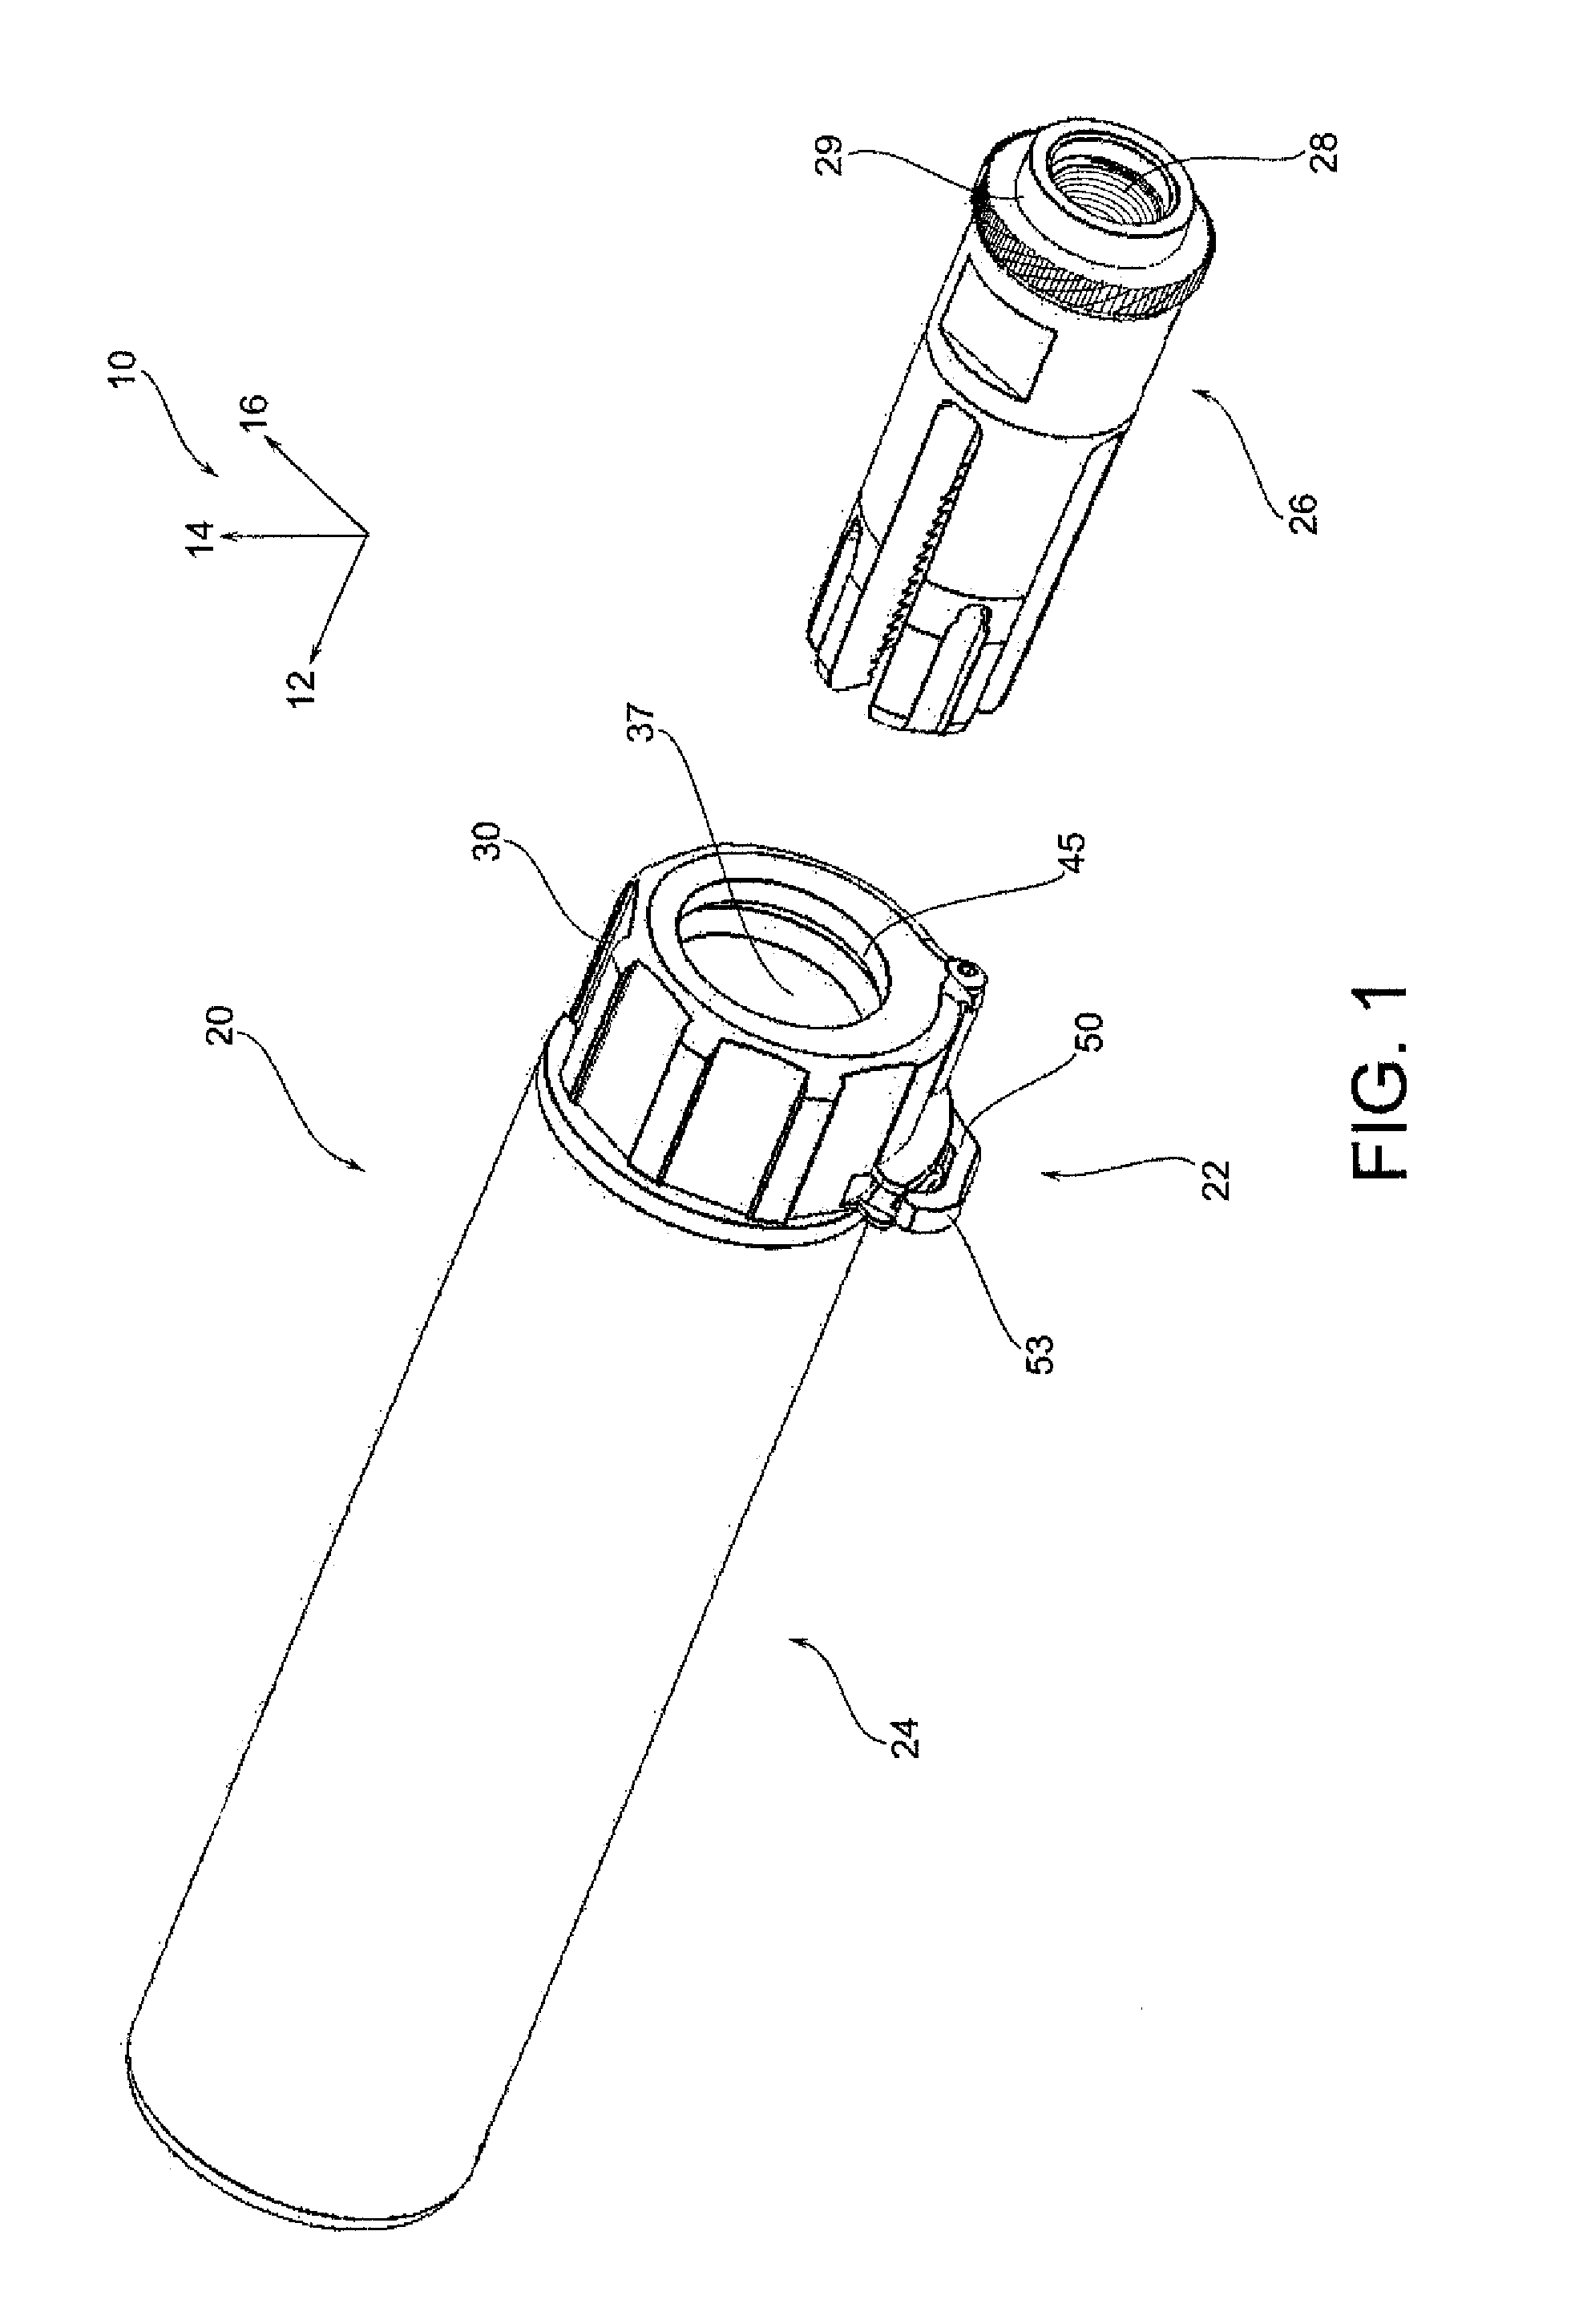 Blank firing adapter for firearm